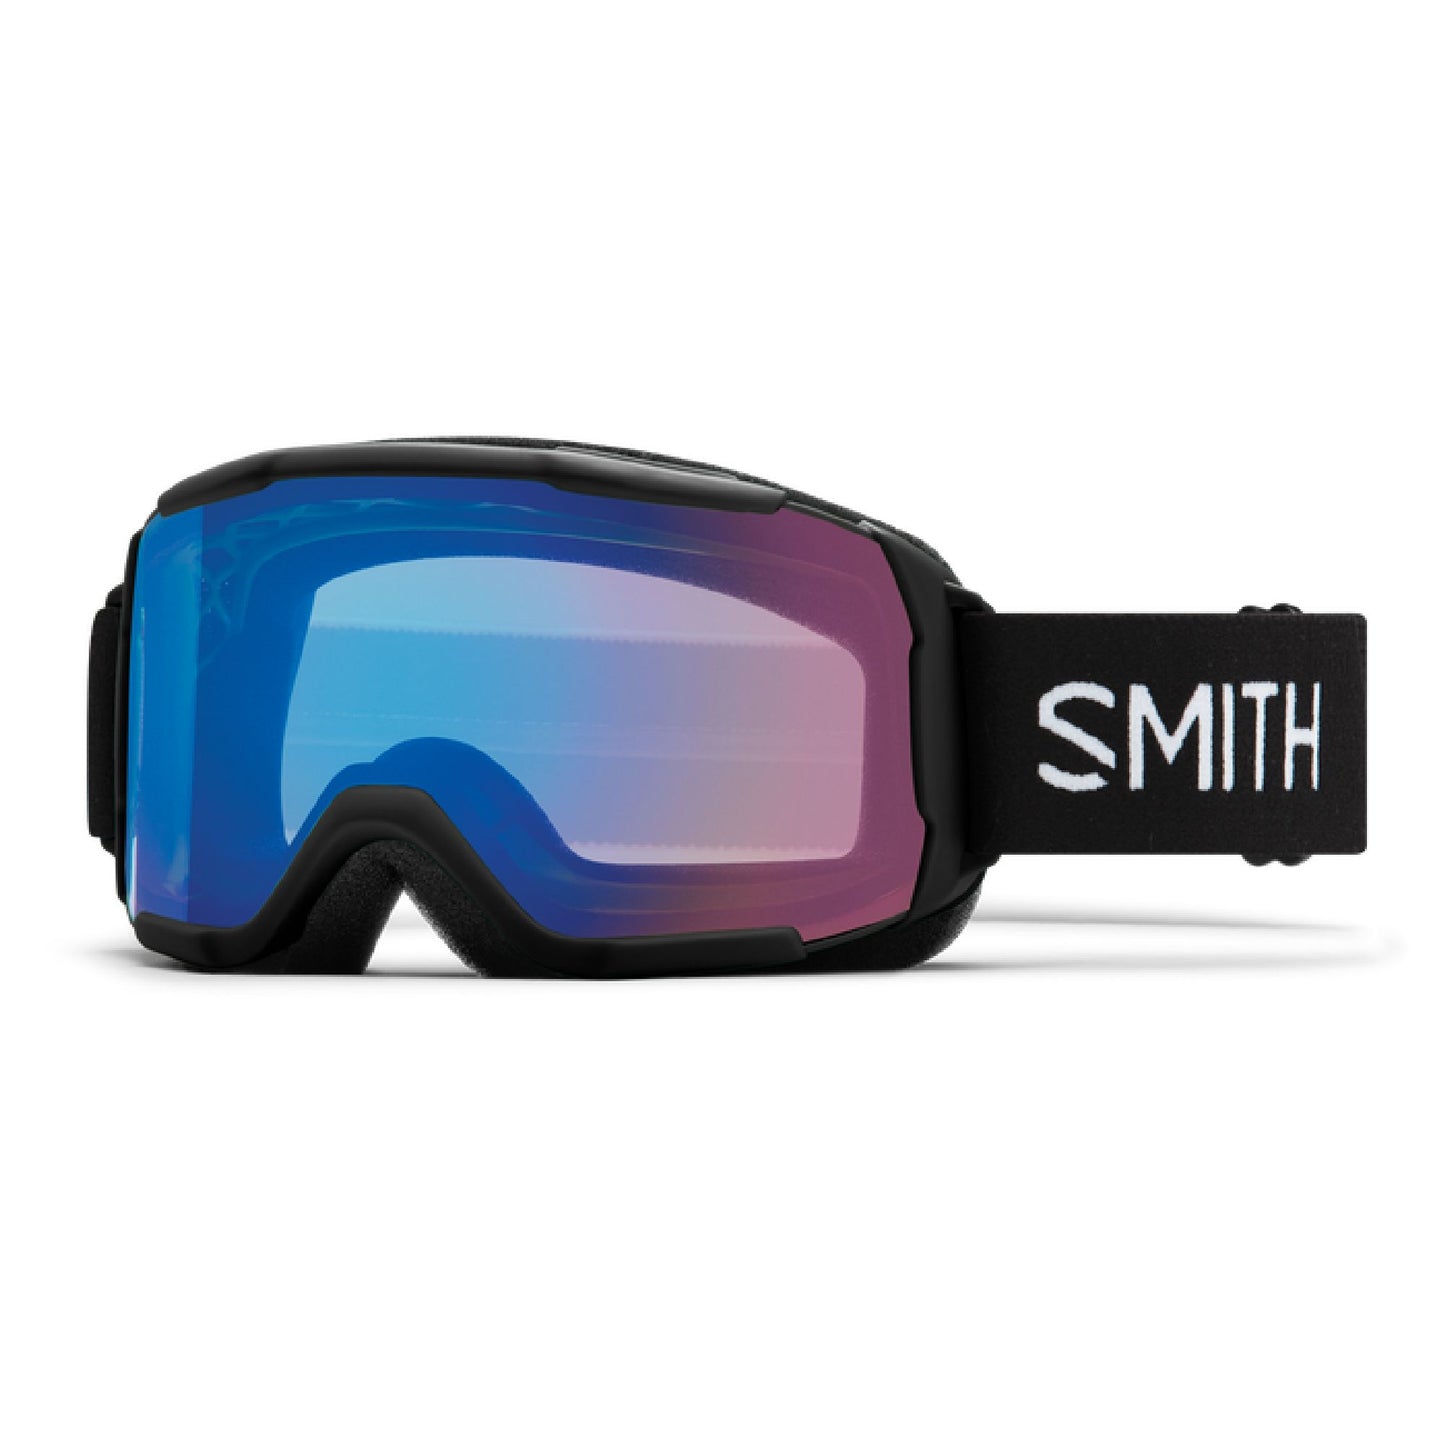 Smith Showcase OTG Snow Goggle Black ChromaPop Storm Rose Flash - Smith Snow Goggles